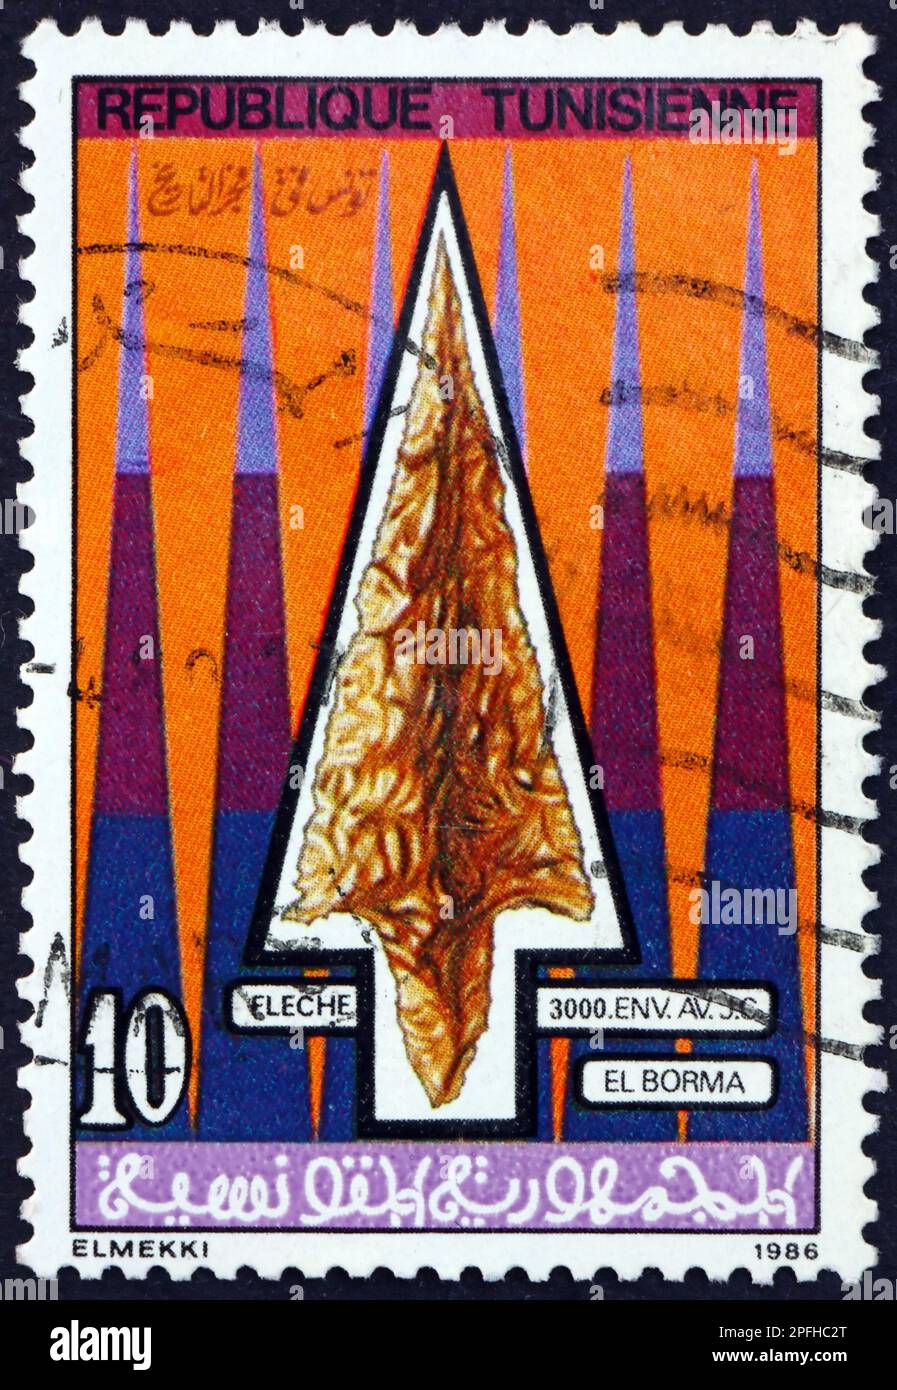 TÚNEZ - CIRCA 1986: Un sello impreso en Túnez muestra la punta de flecha del sílex, El Borma 3000 a.C., artefacto prehistórico, circa 1986 Foto de stock